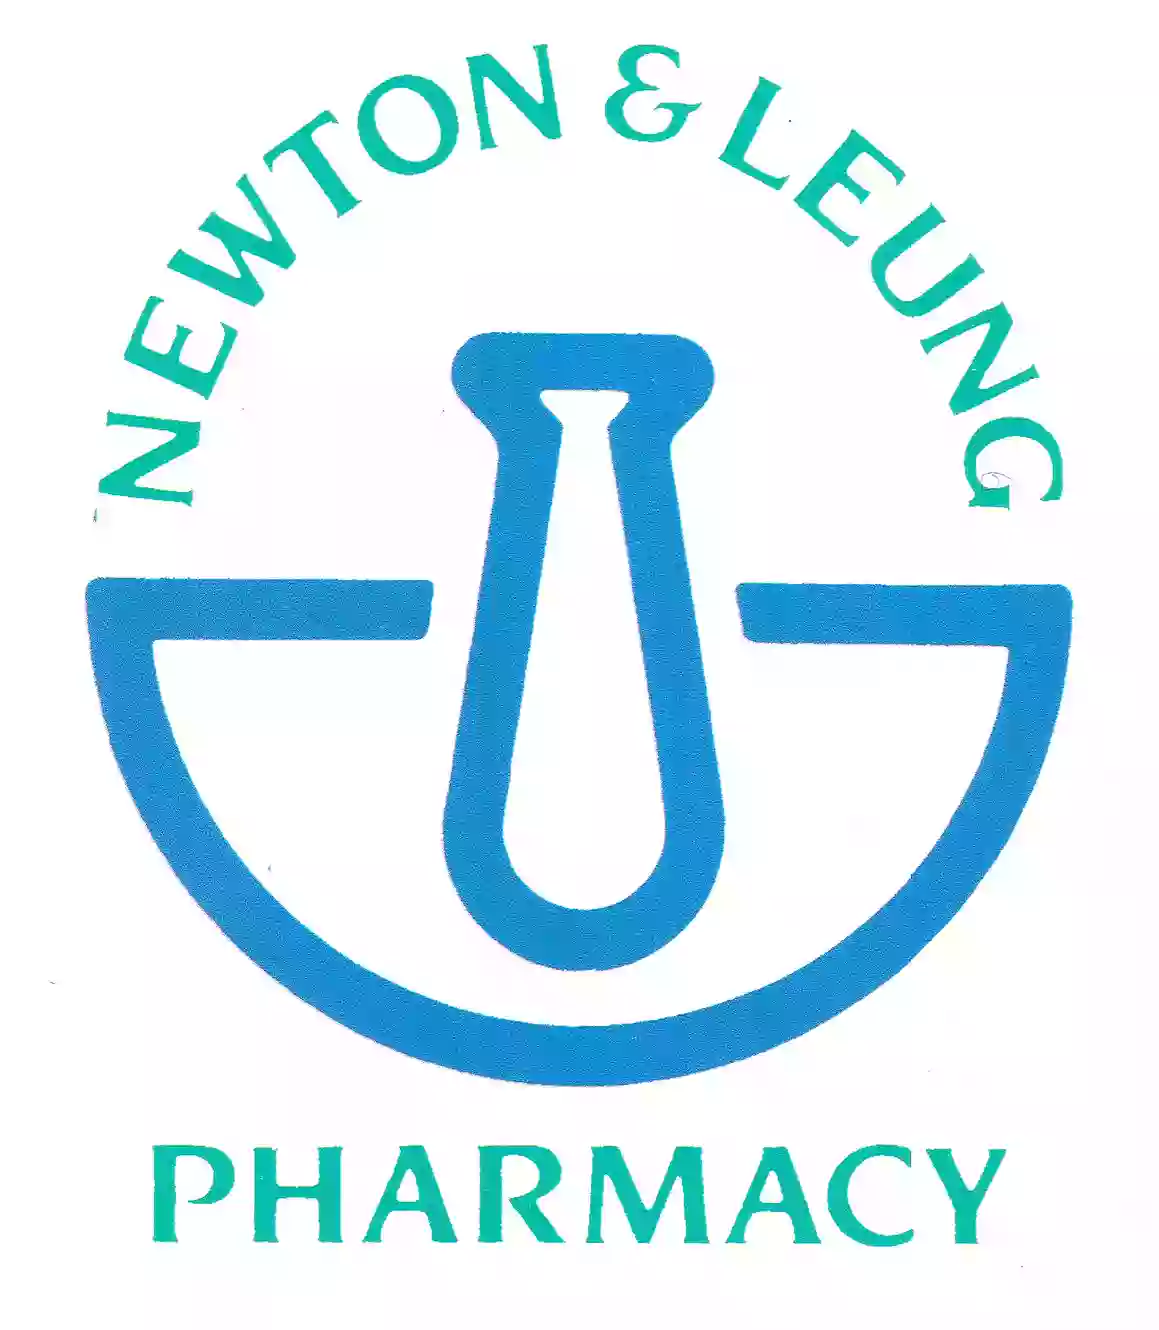 Newton & Leung Pharmacy